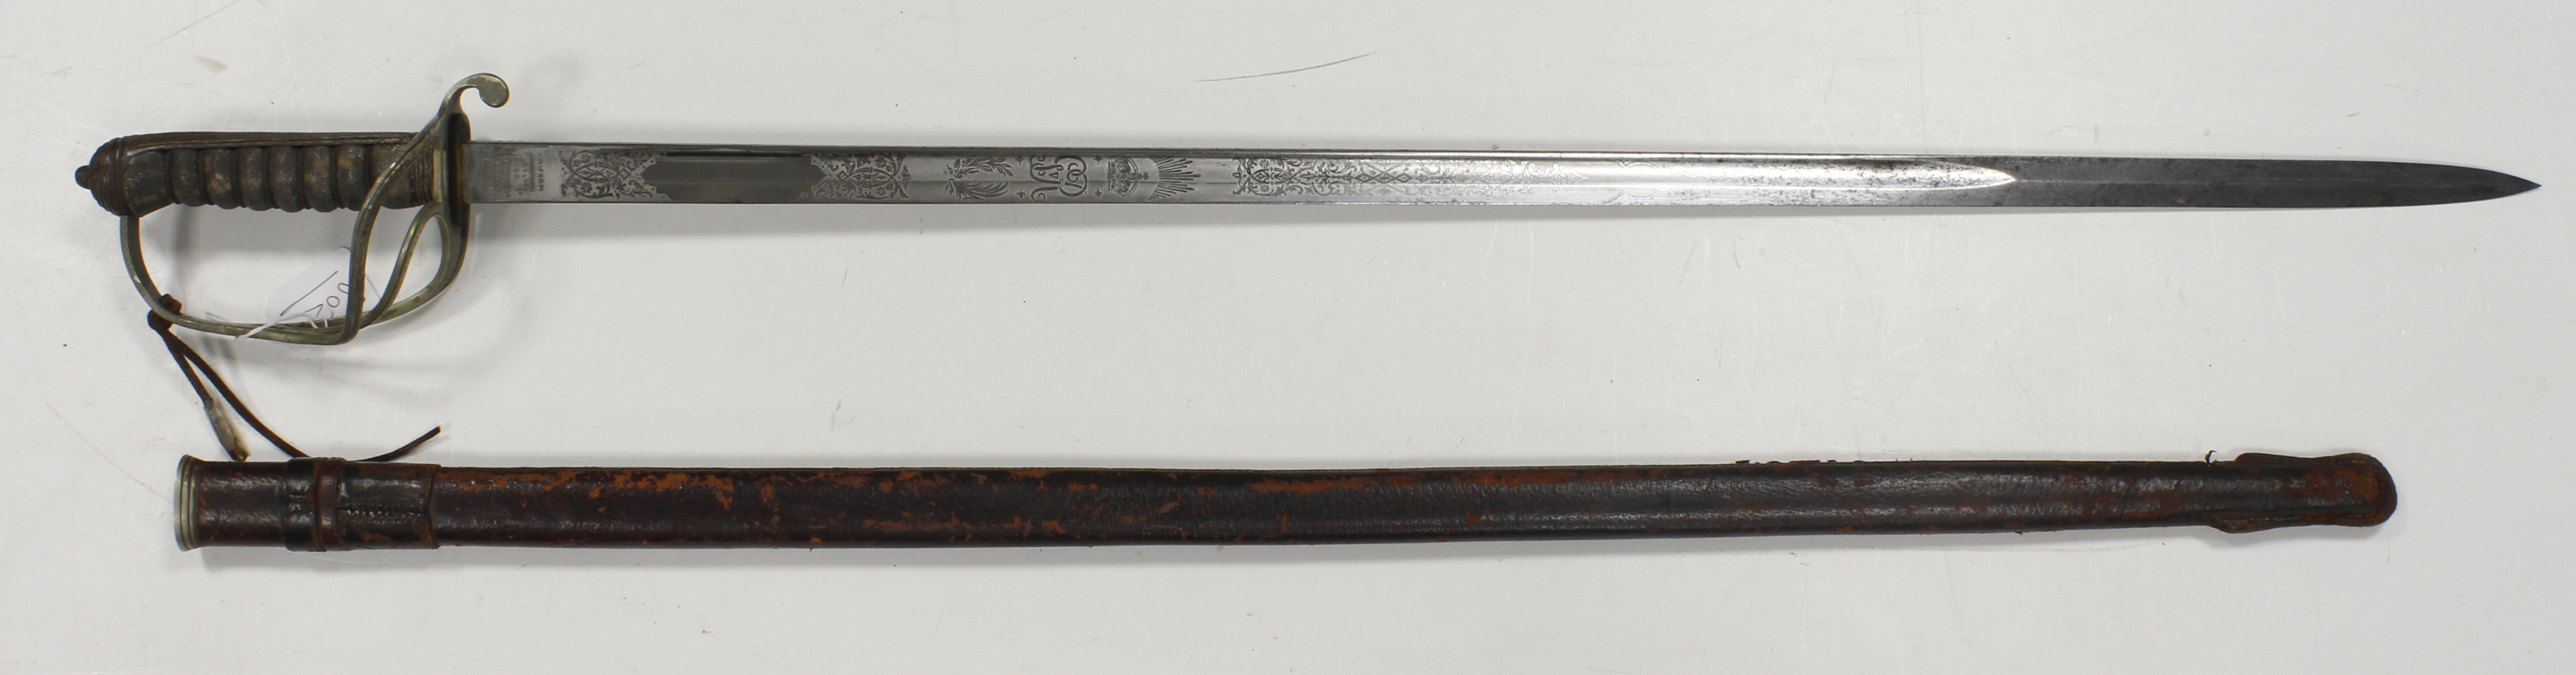 1821 pattern Artillery Officers Sword, blade 34", etched "Royal Artillery" etc No 16436. Maker "